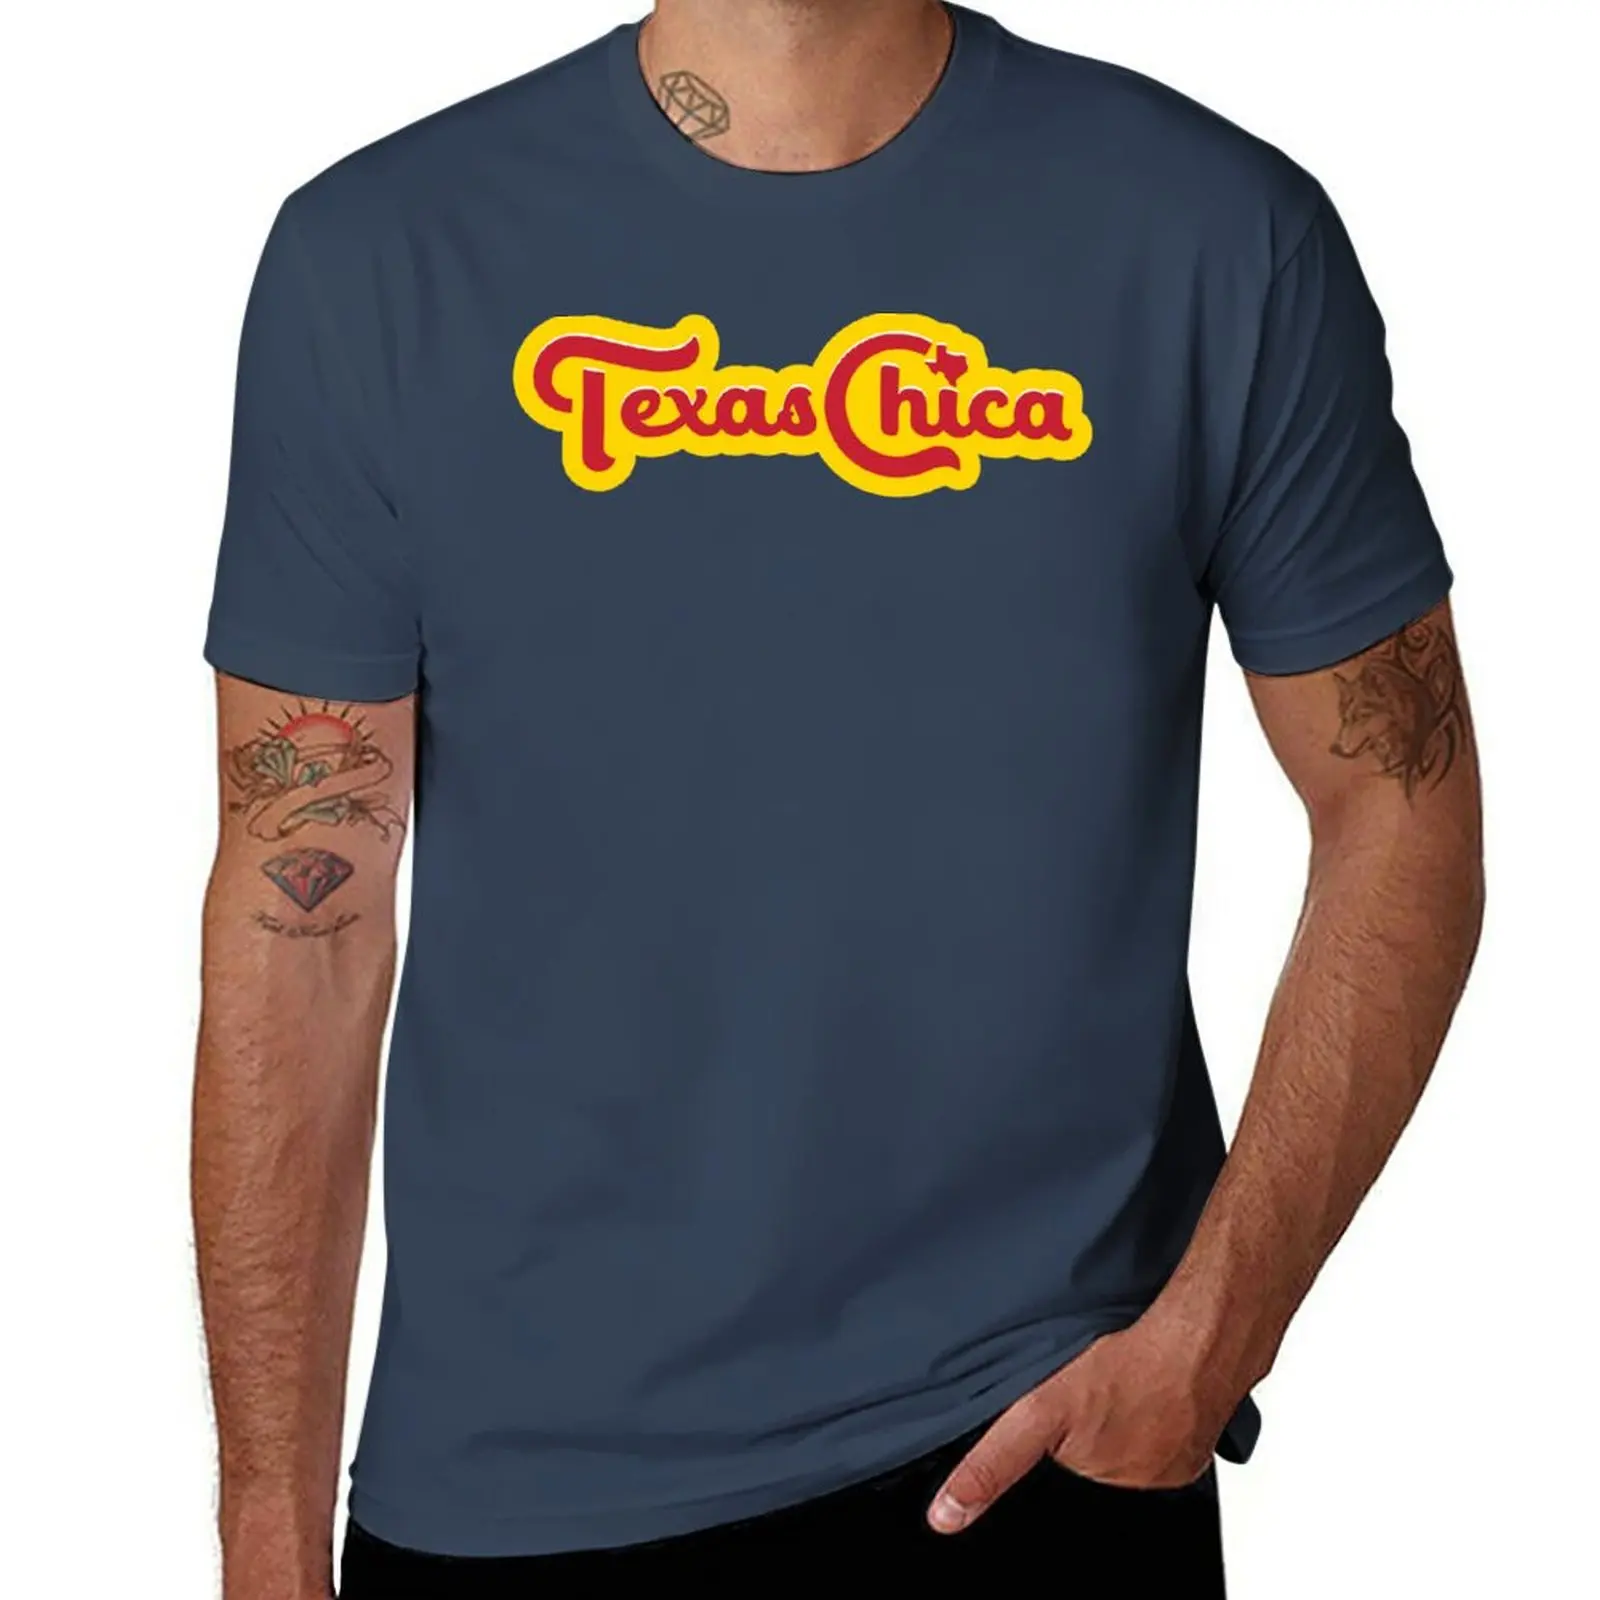 

New Texas Chica T-Shirt black t shirts quick-drying t-shirt custom t shirts mens white t shirts